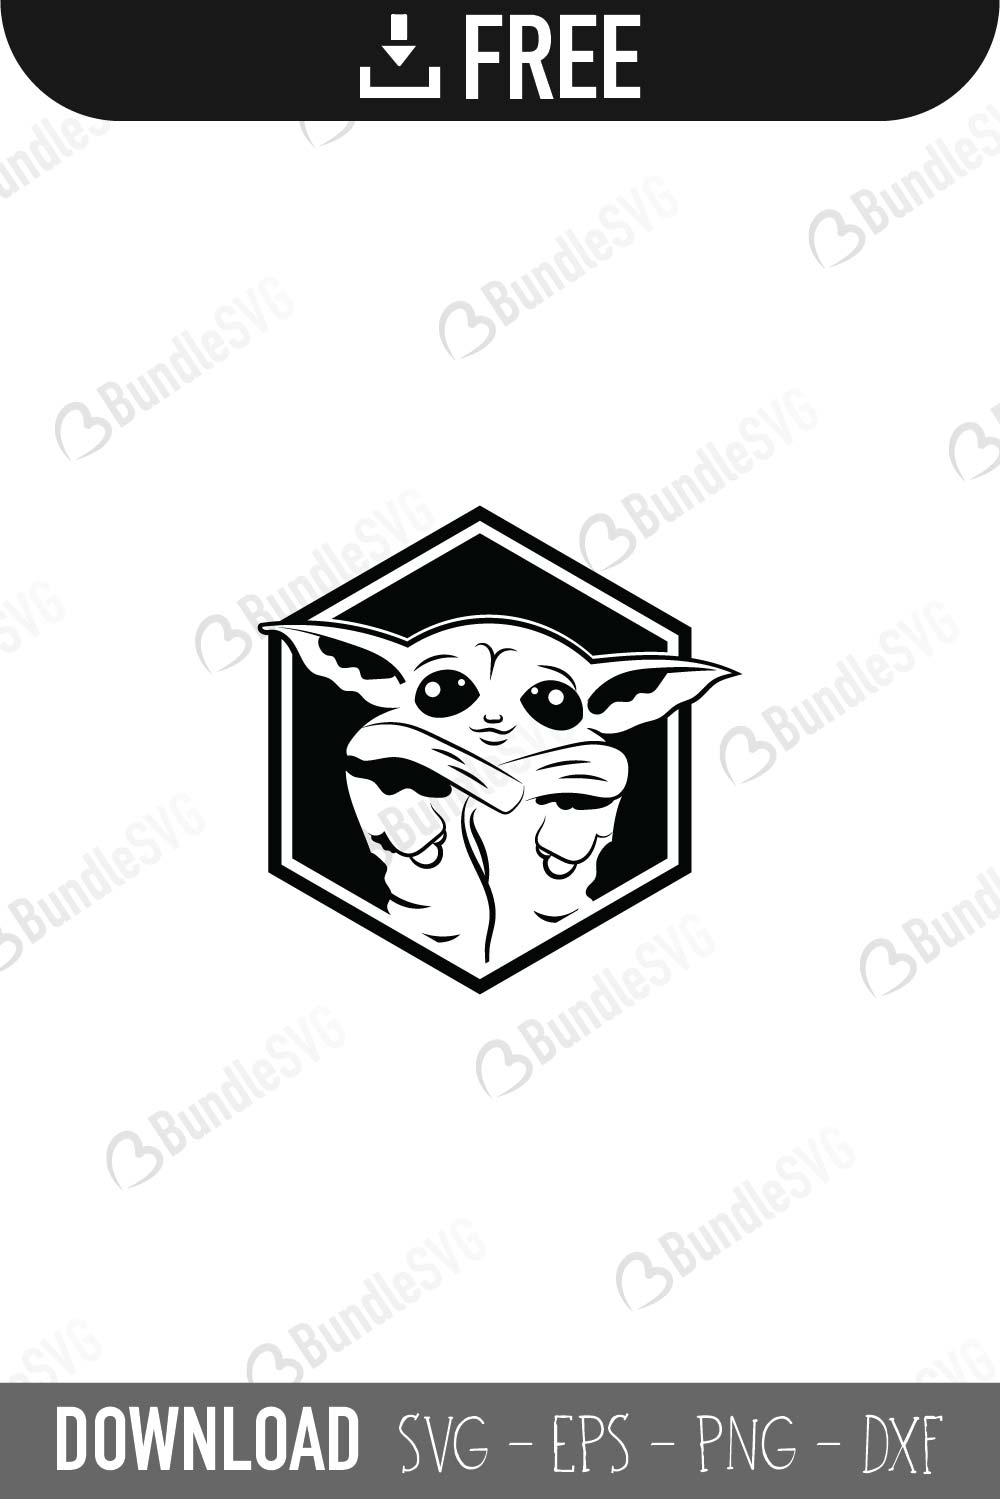 Download Baby Yoda SVG Cut Files | BundleSVG